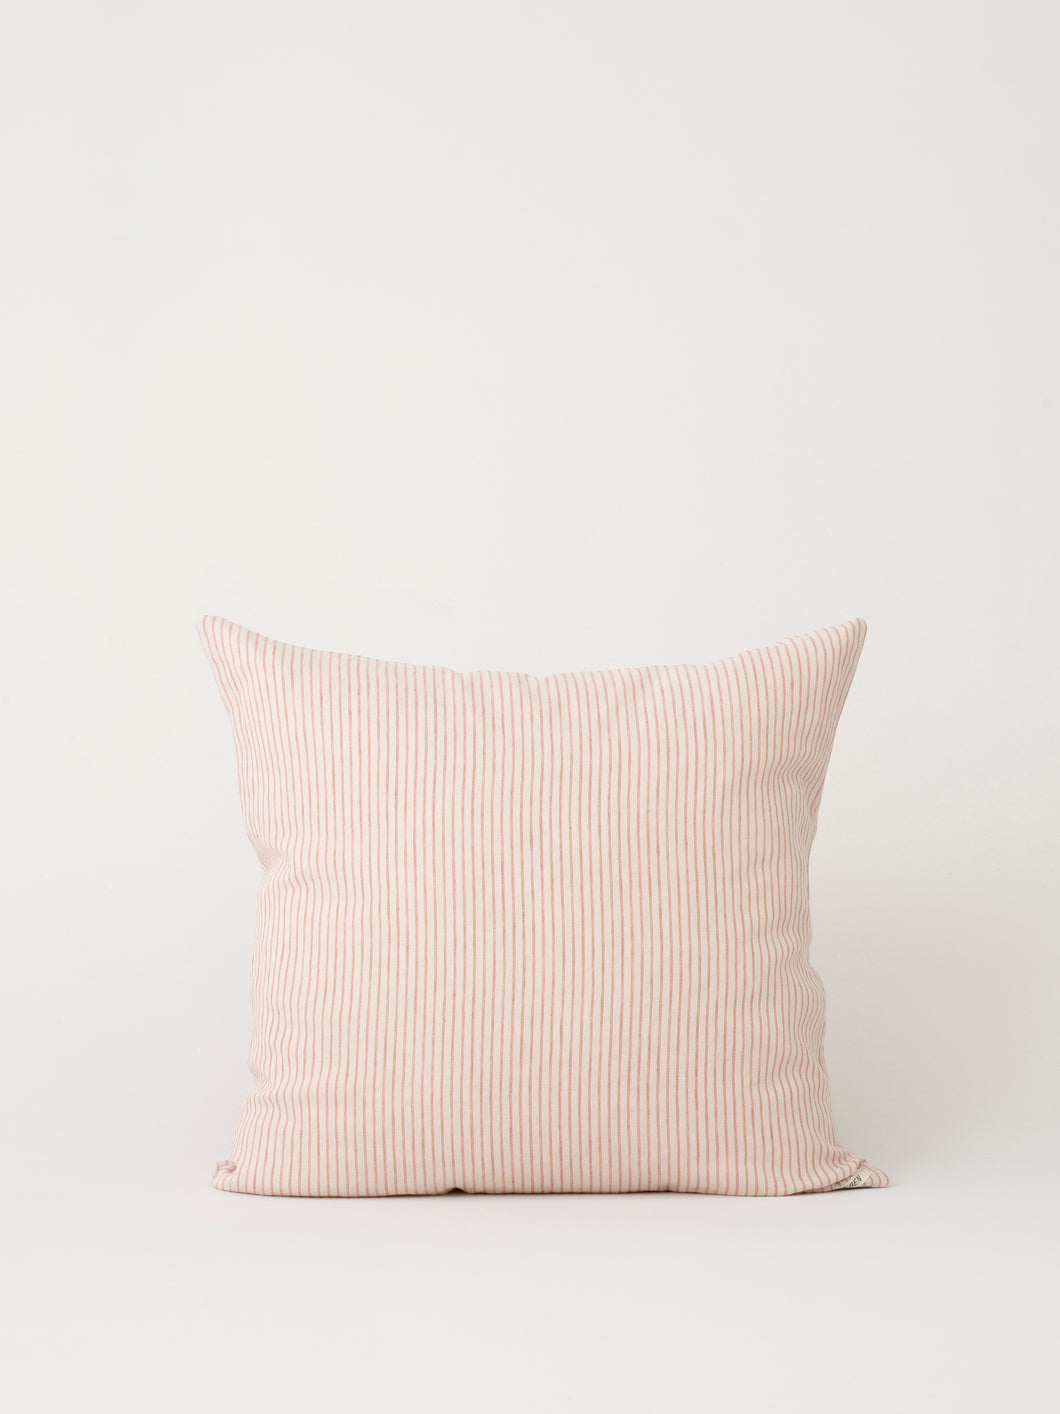 Stilleben cushion cover beige/terracotta